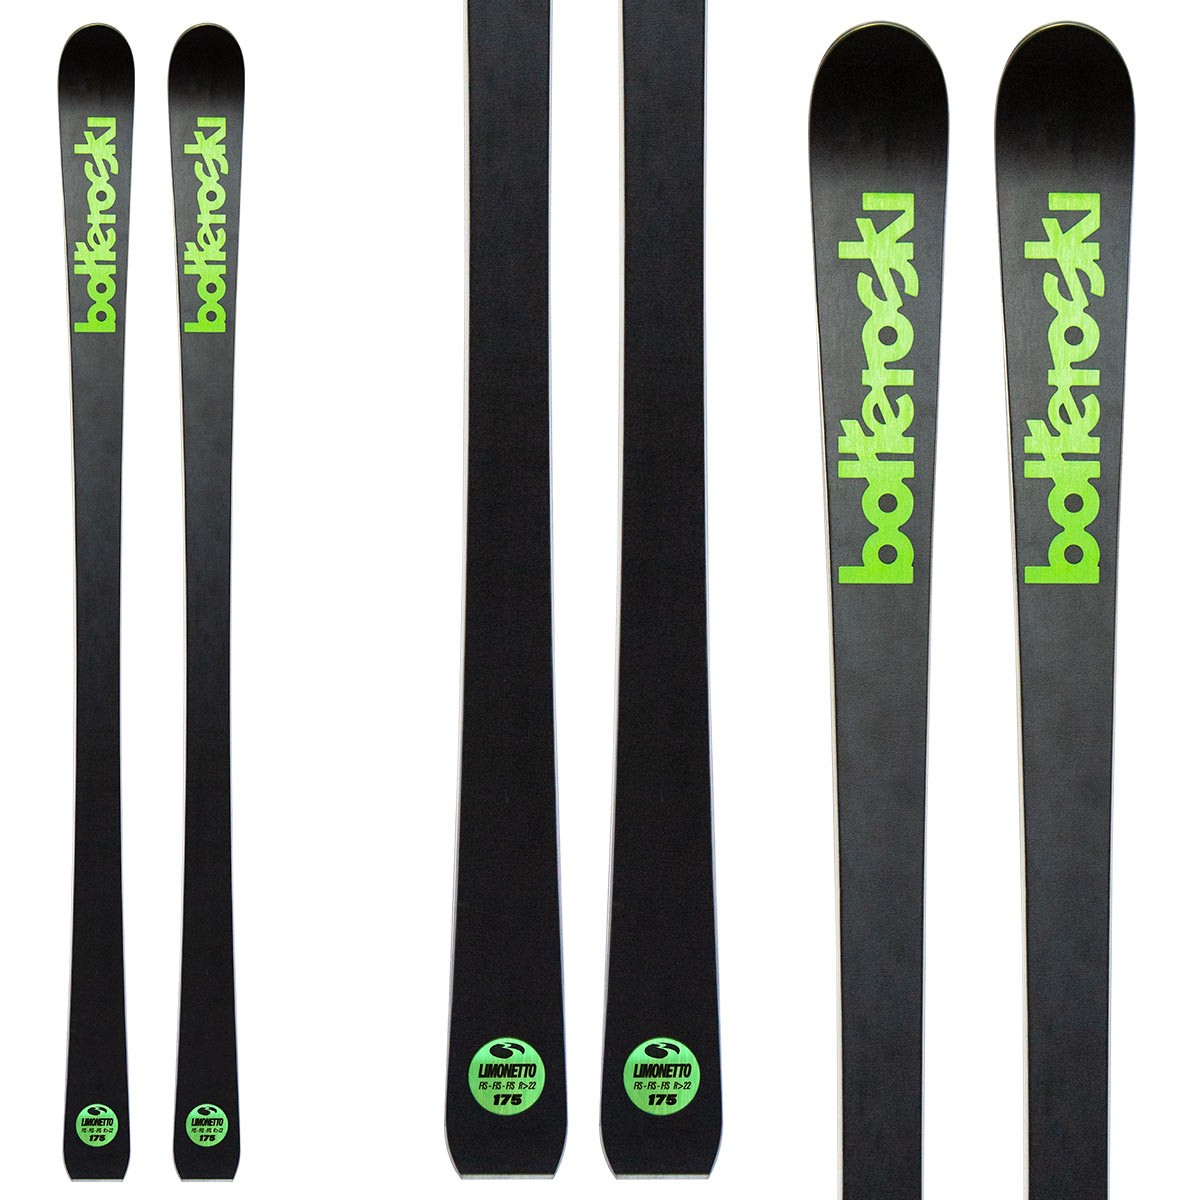  Sci Bottero Ski Limonetto 160-170 con attacchi V614 con WC Race (Colore: nero-verde, Taglia: 170) 